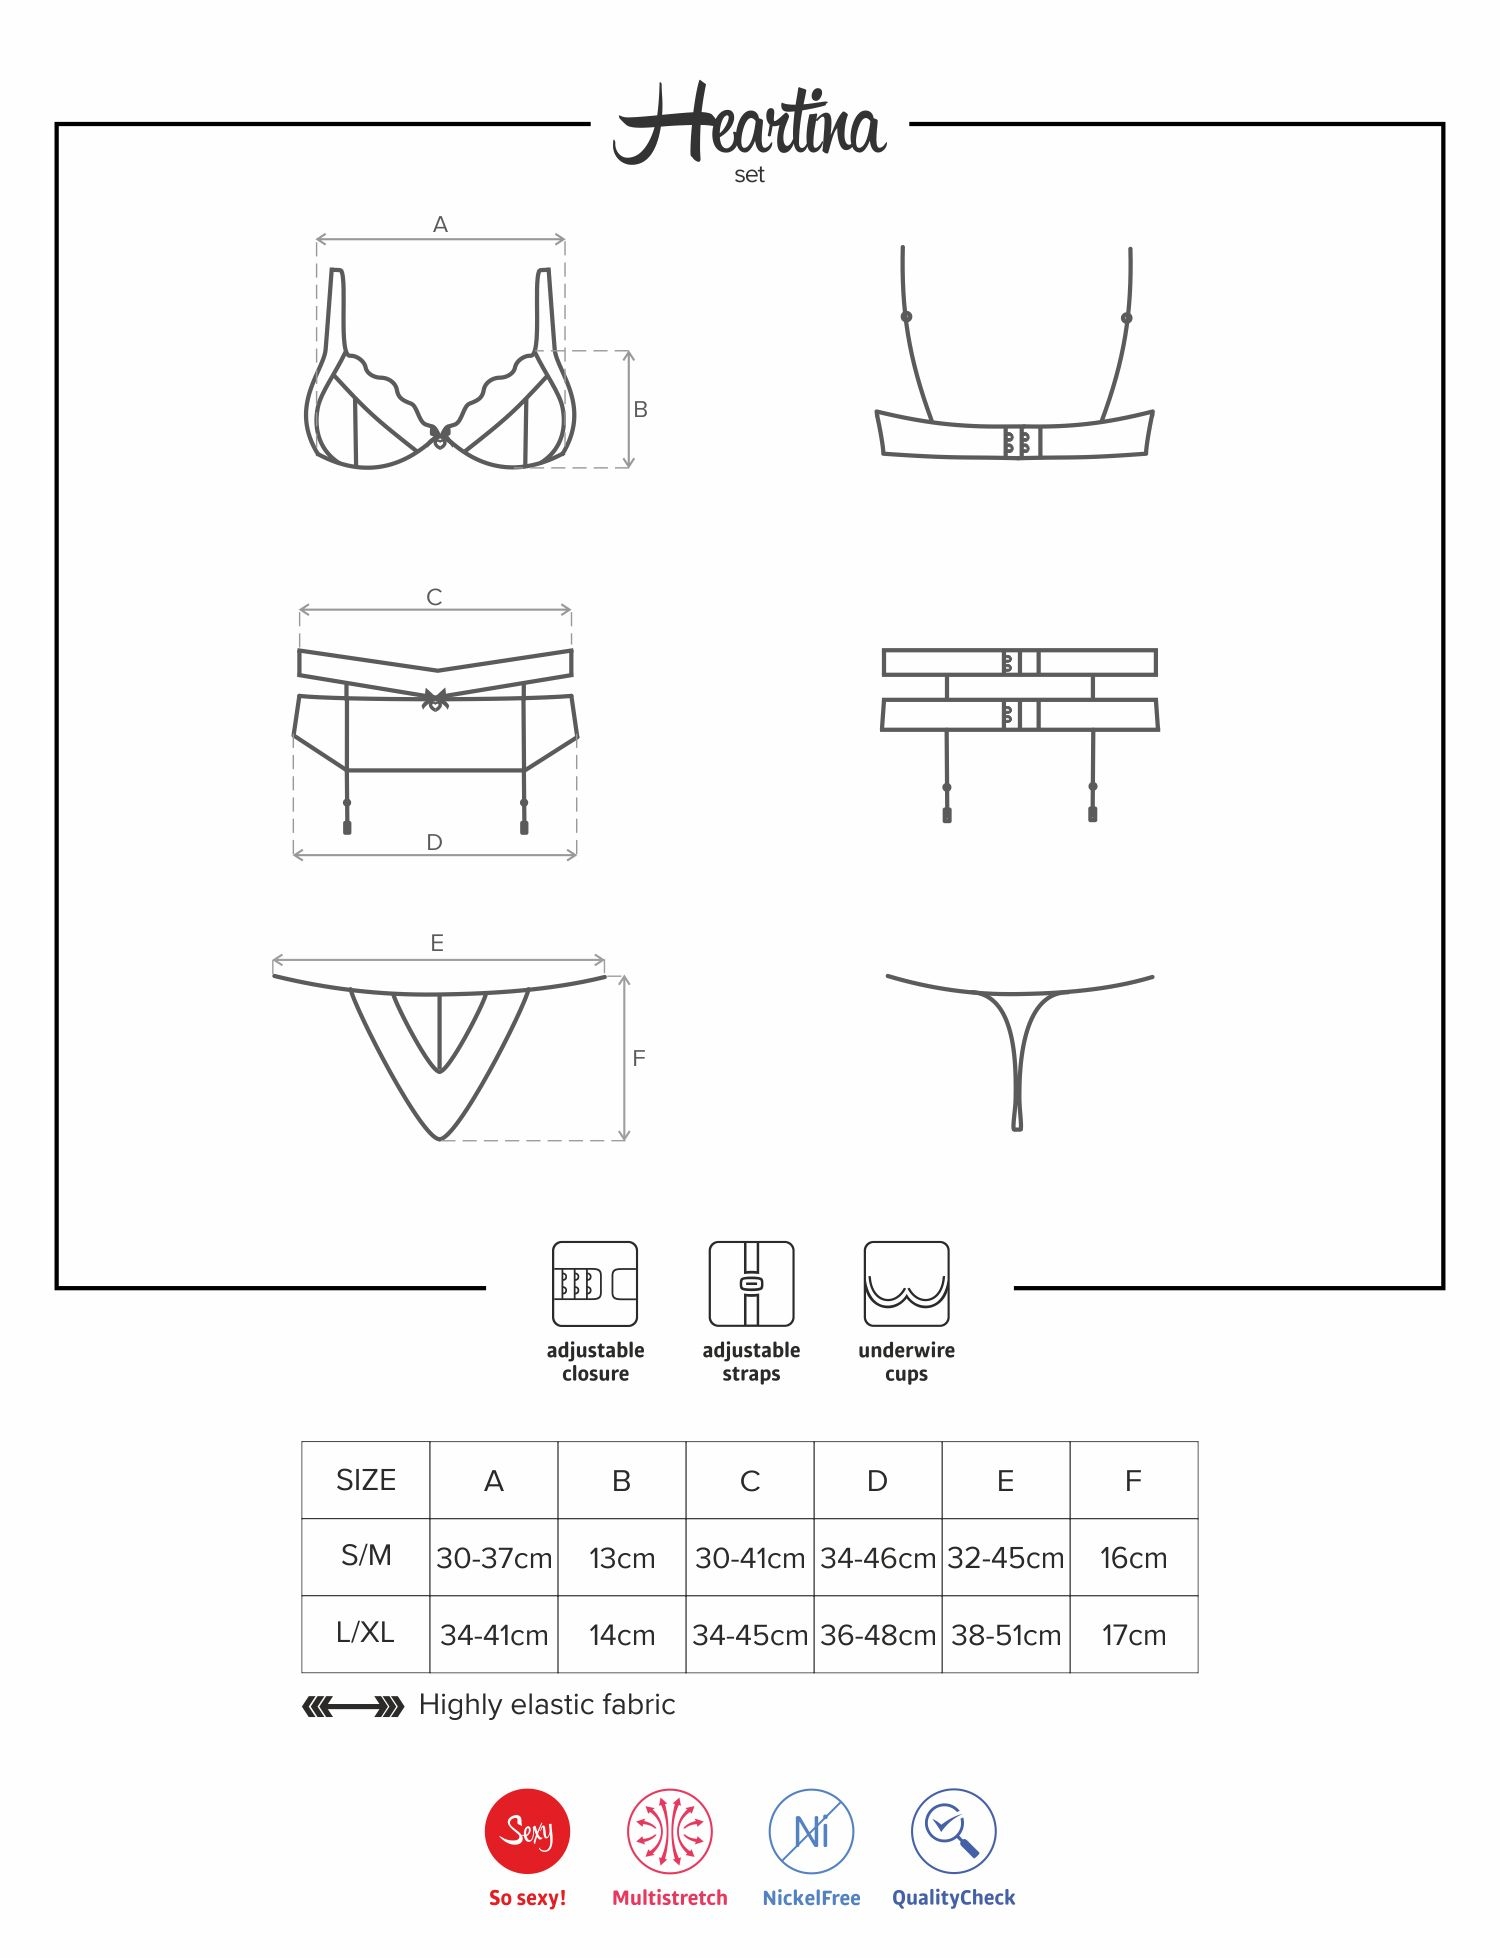 tabuľka veľkostí erotické prádlo Obsessive